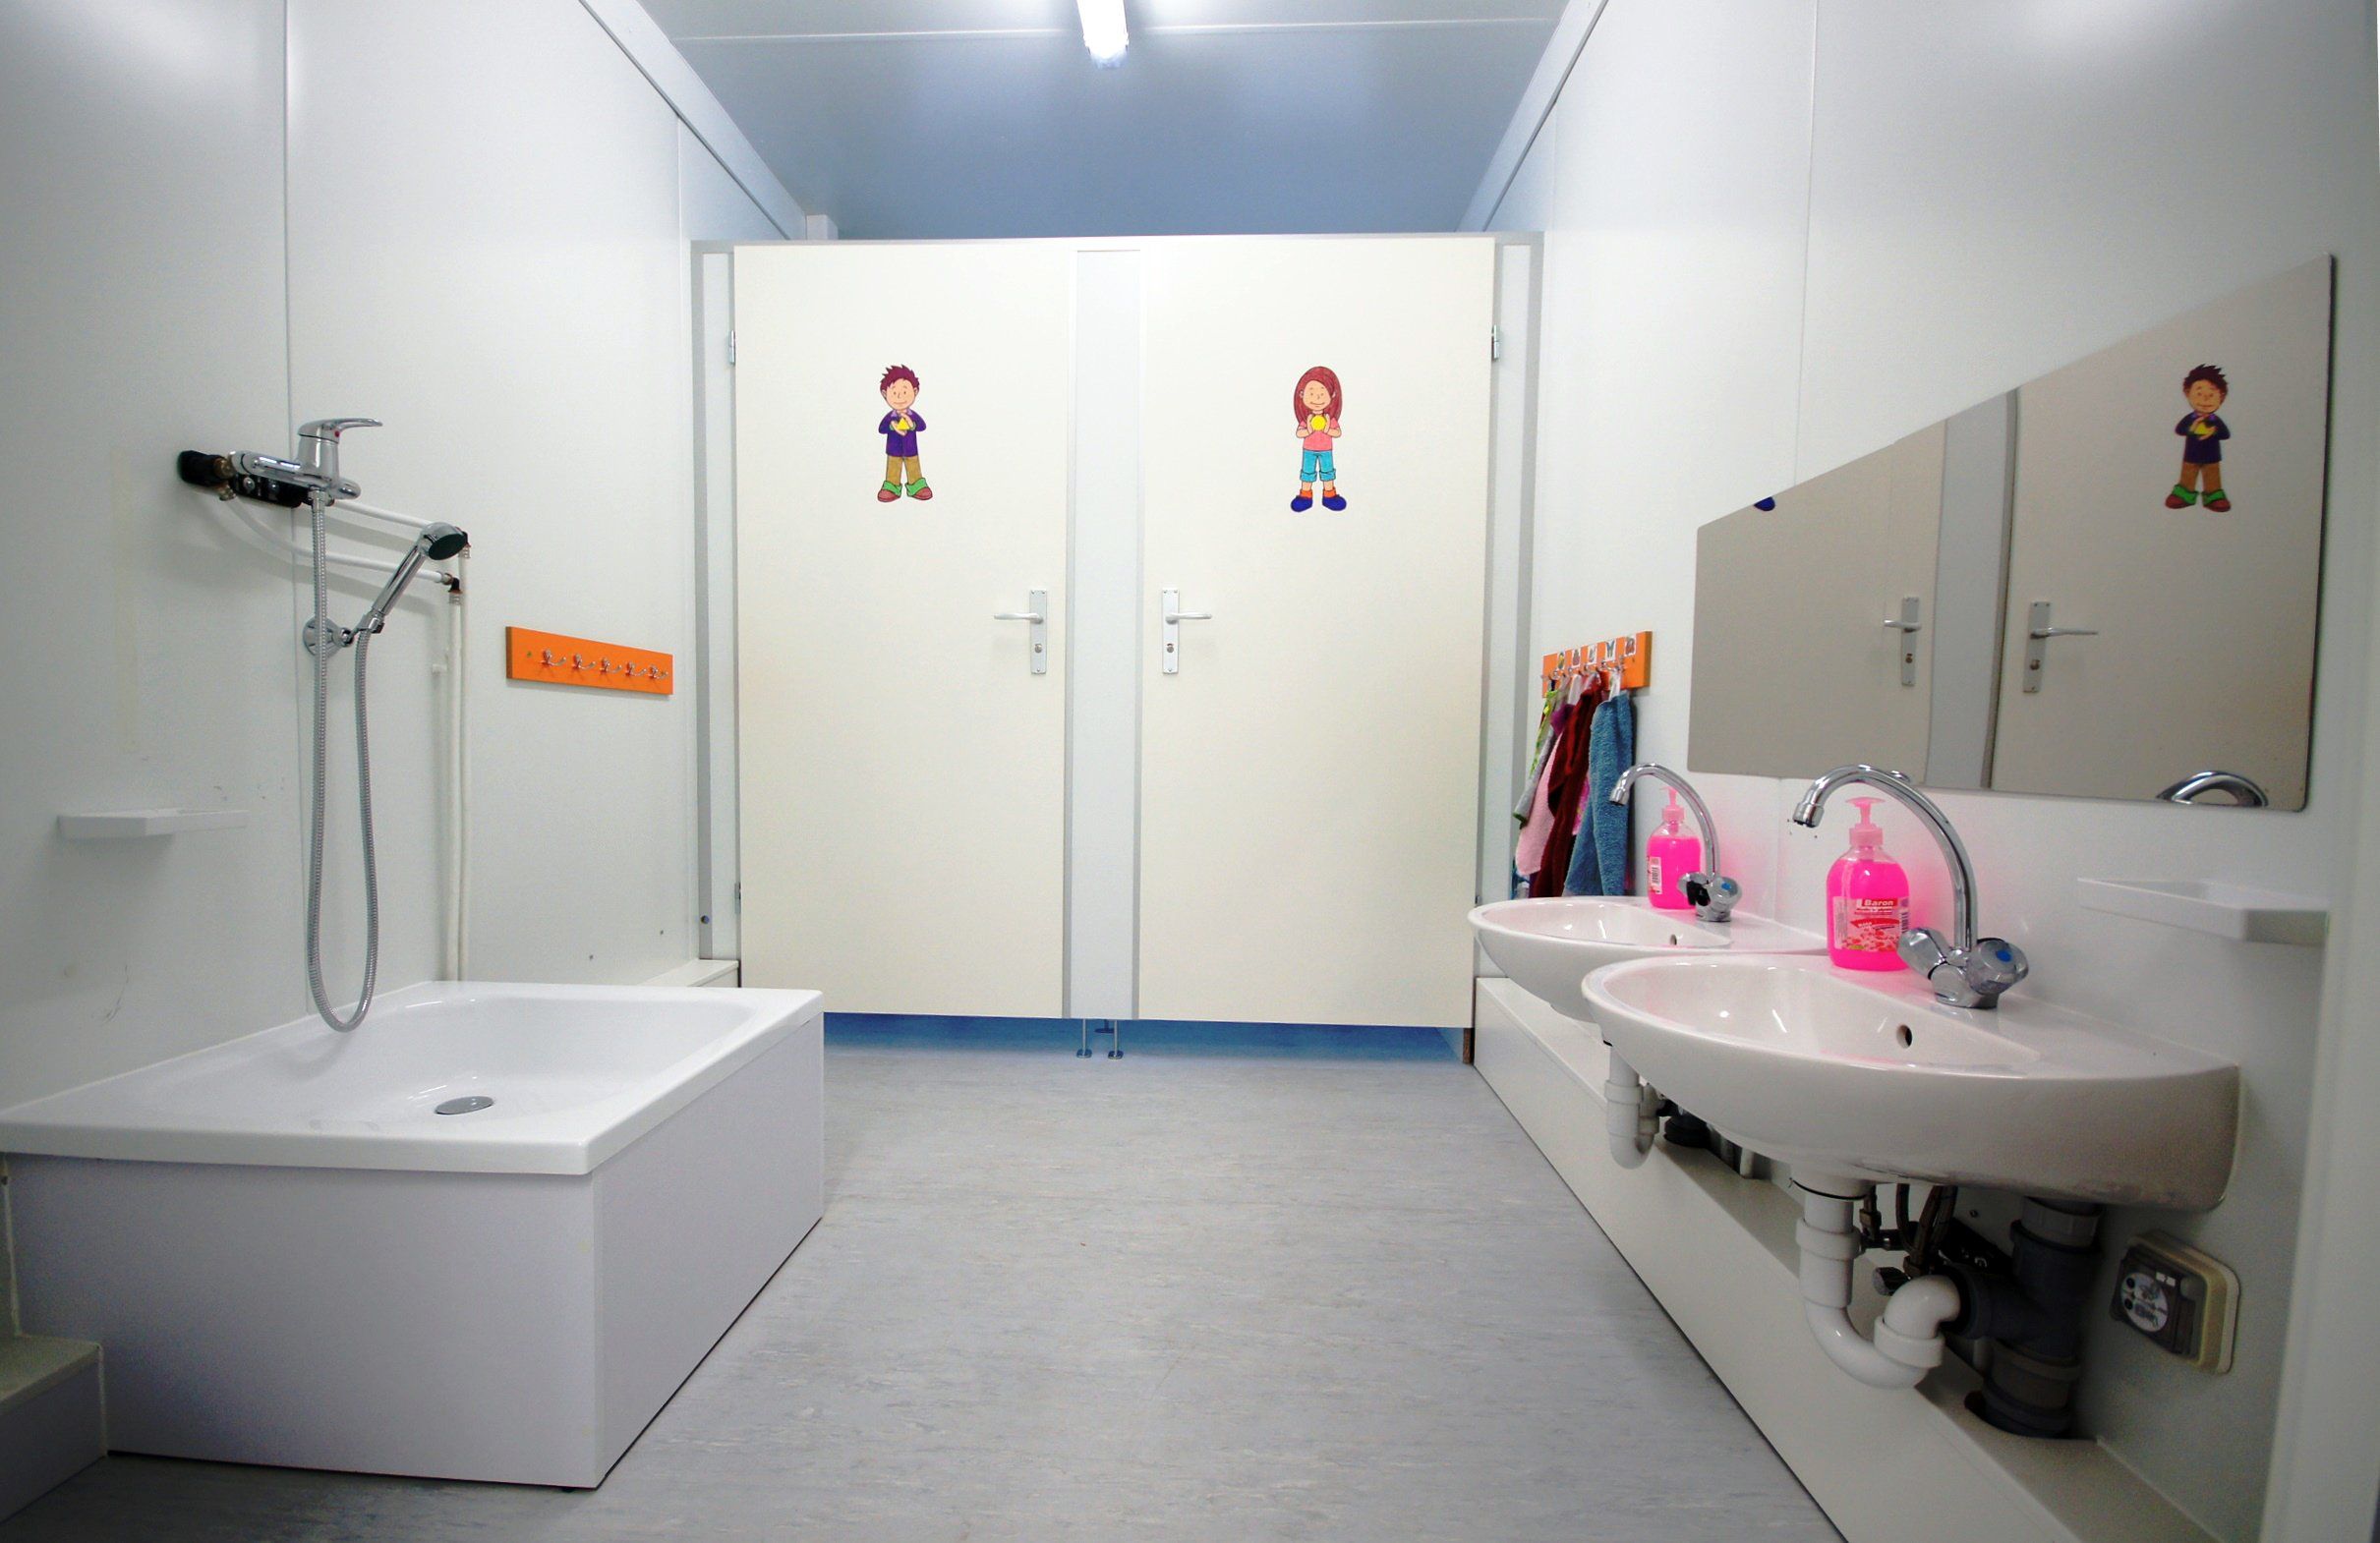 Child-use sanitary areas